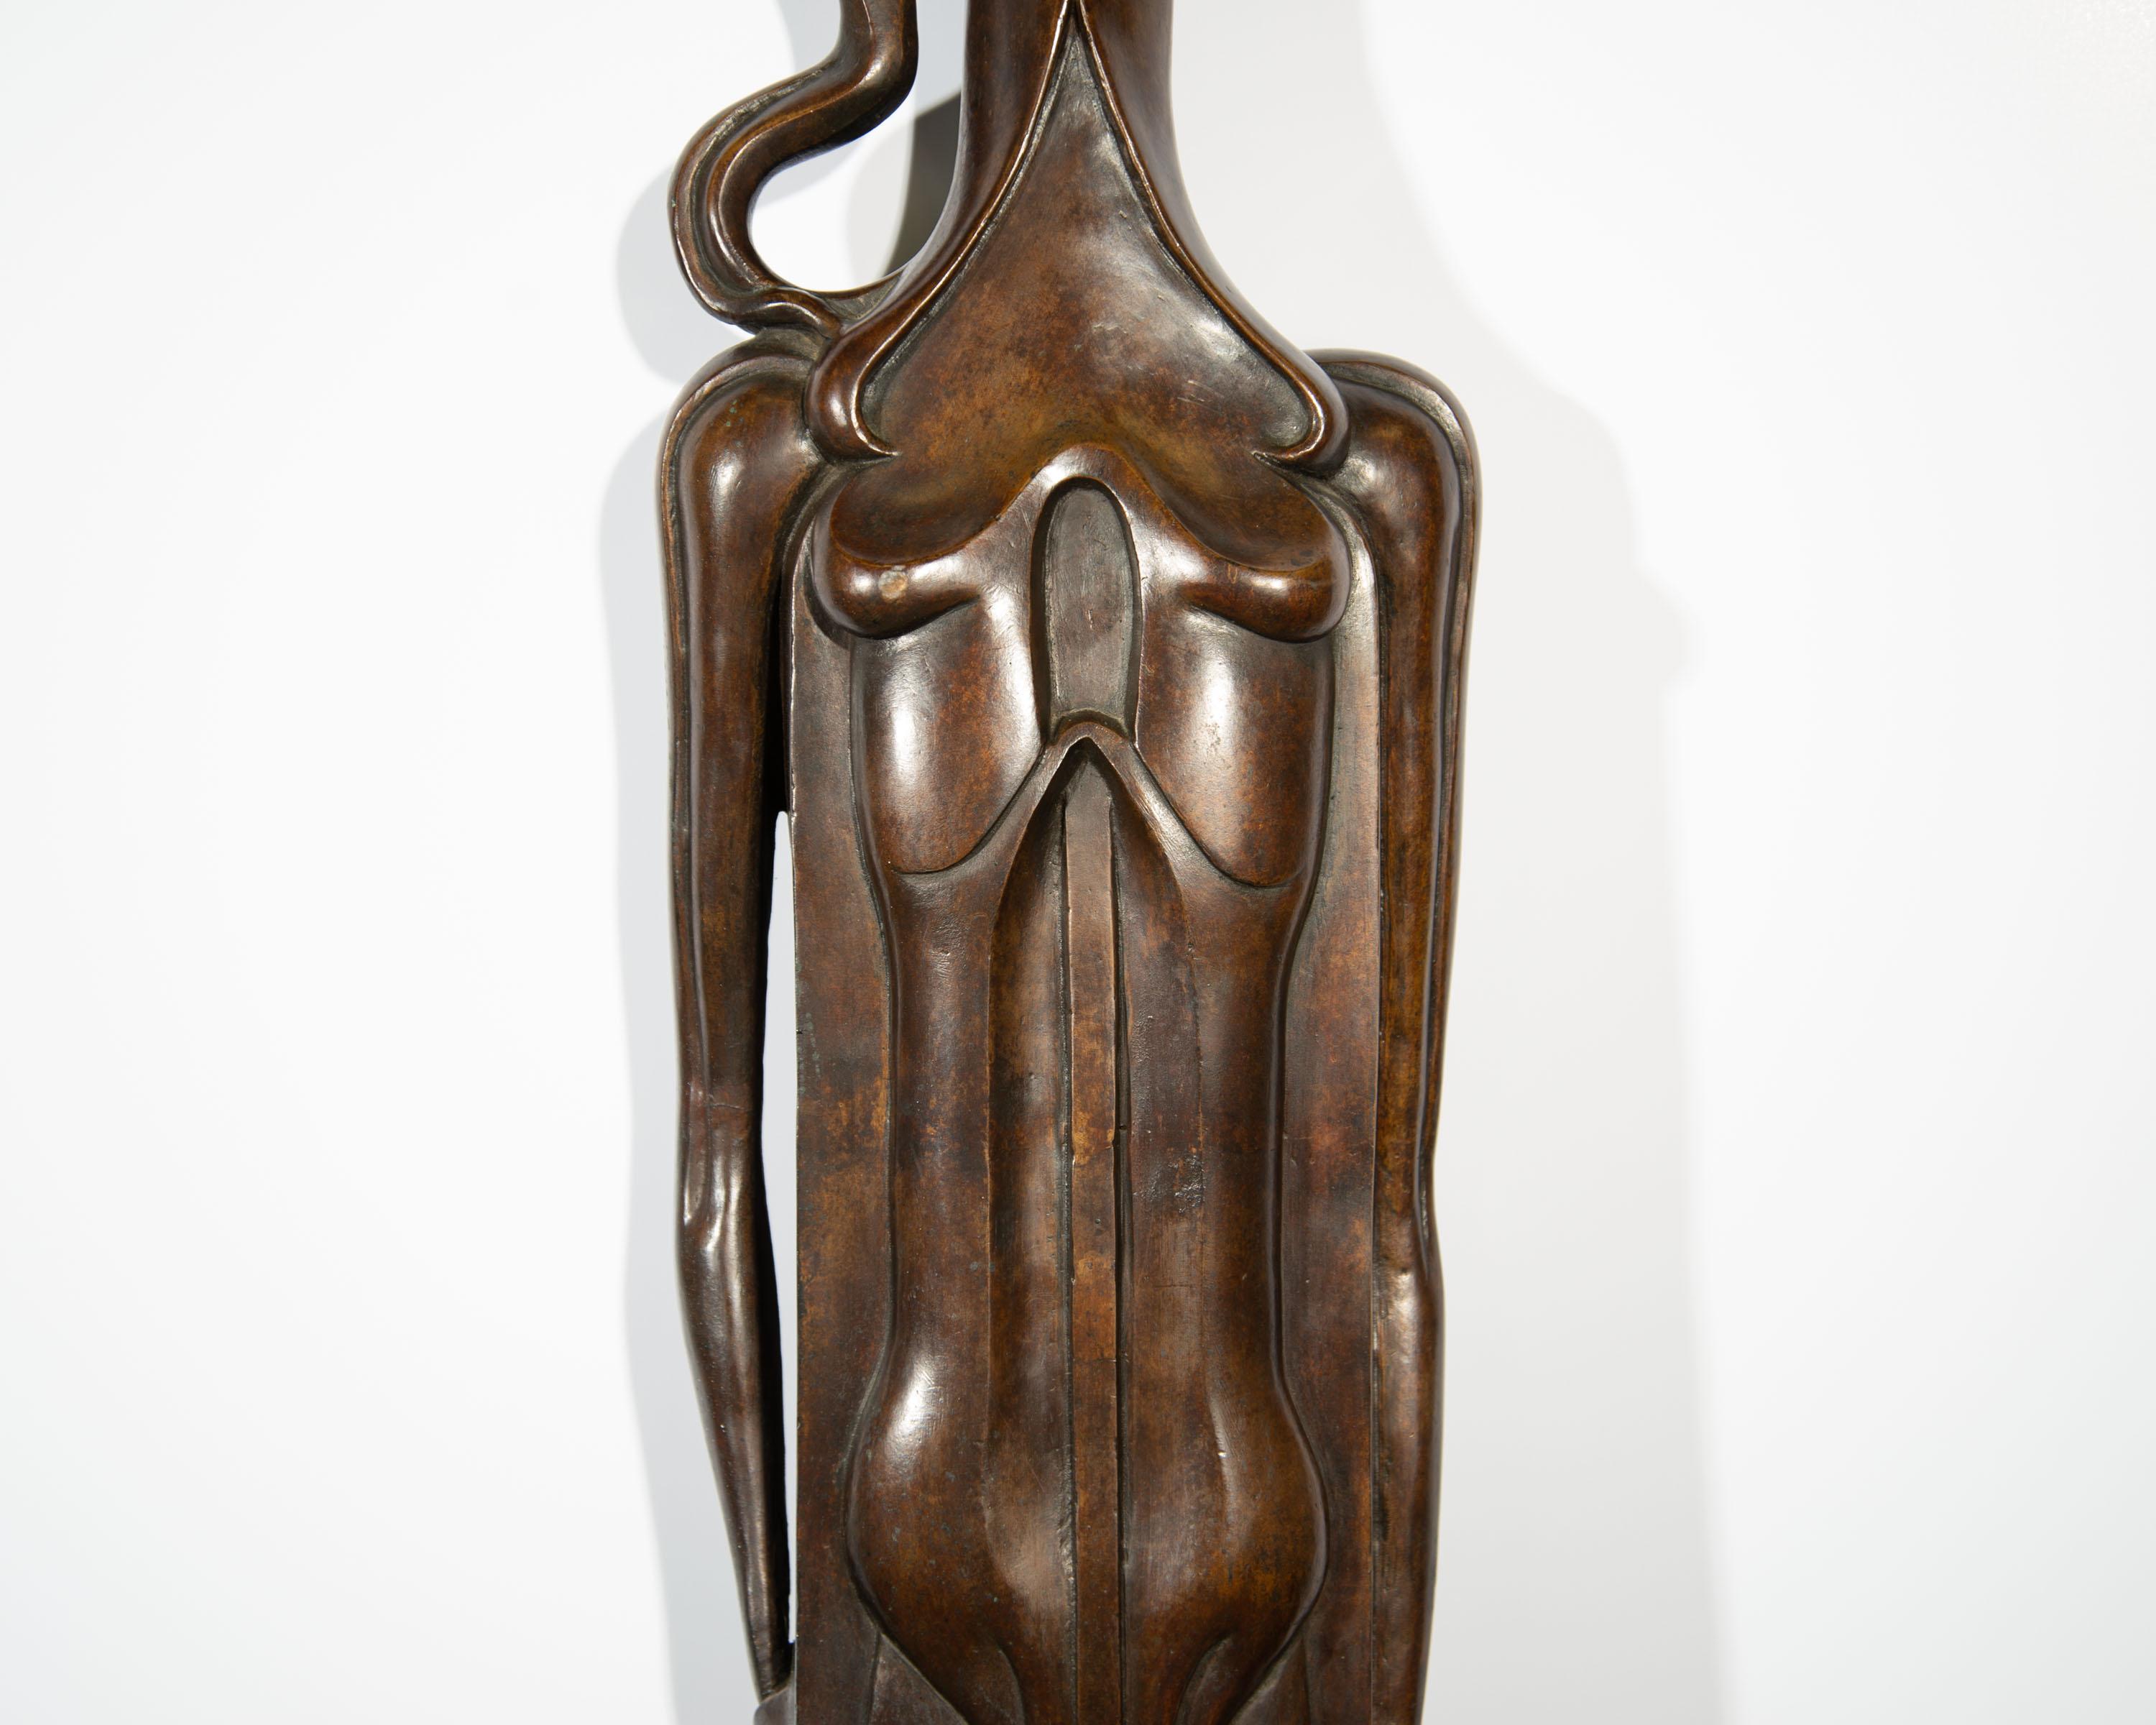 Isidore Grossman Signed 1955 “Fegele” Bronze Sculpture of a Figure For Sale 4